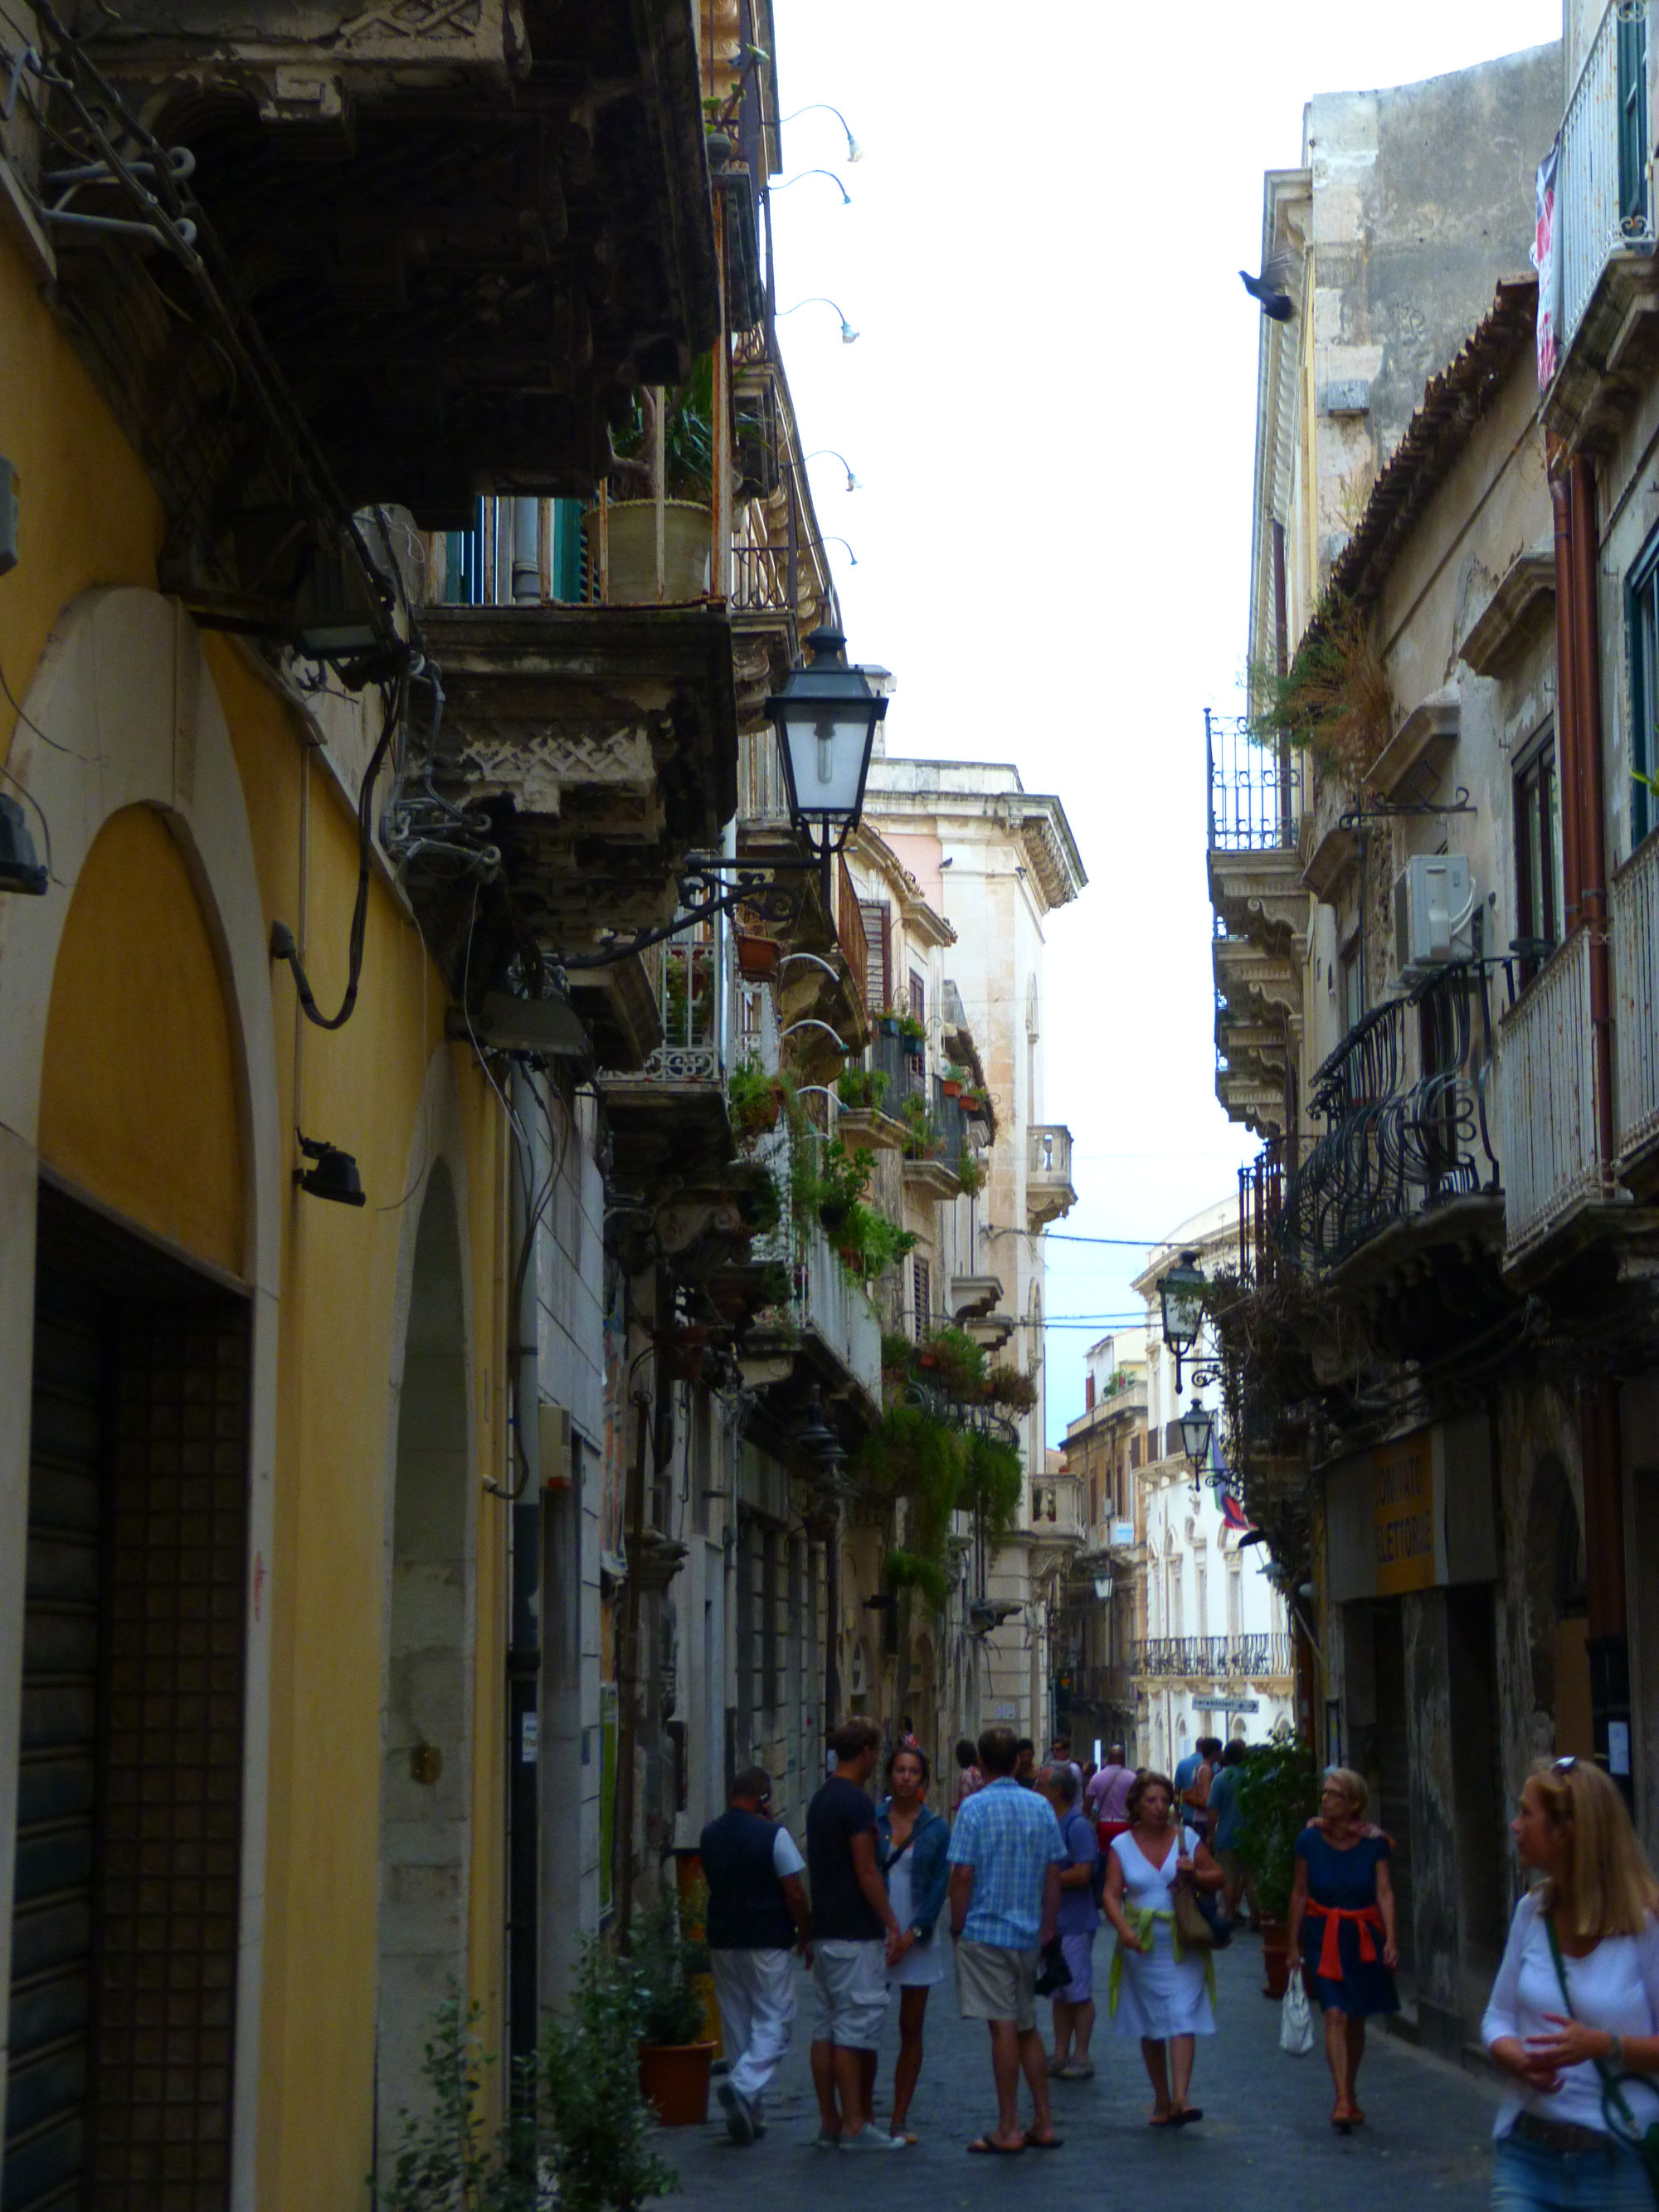 An alley of Ortigia